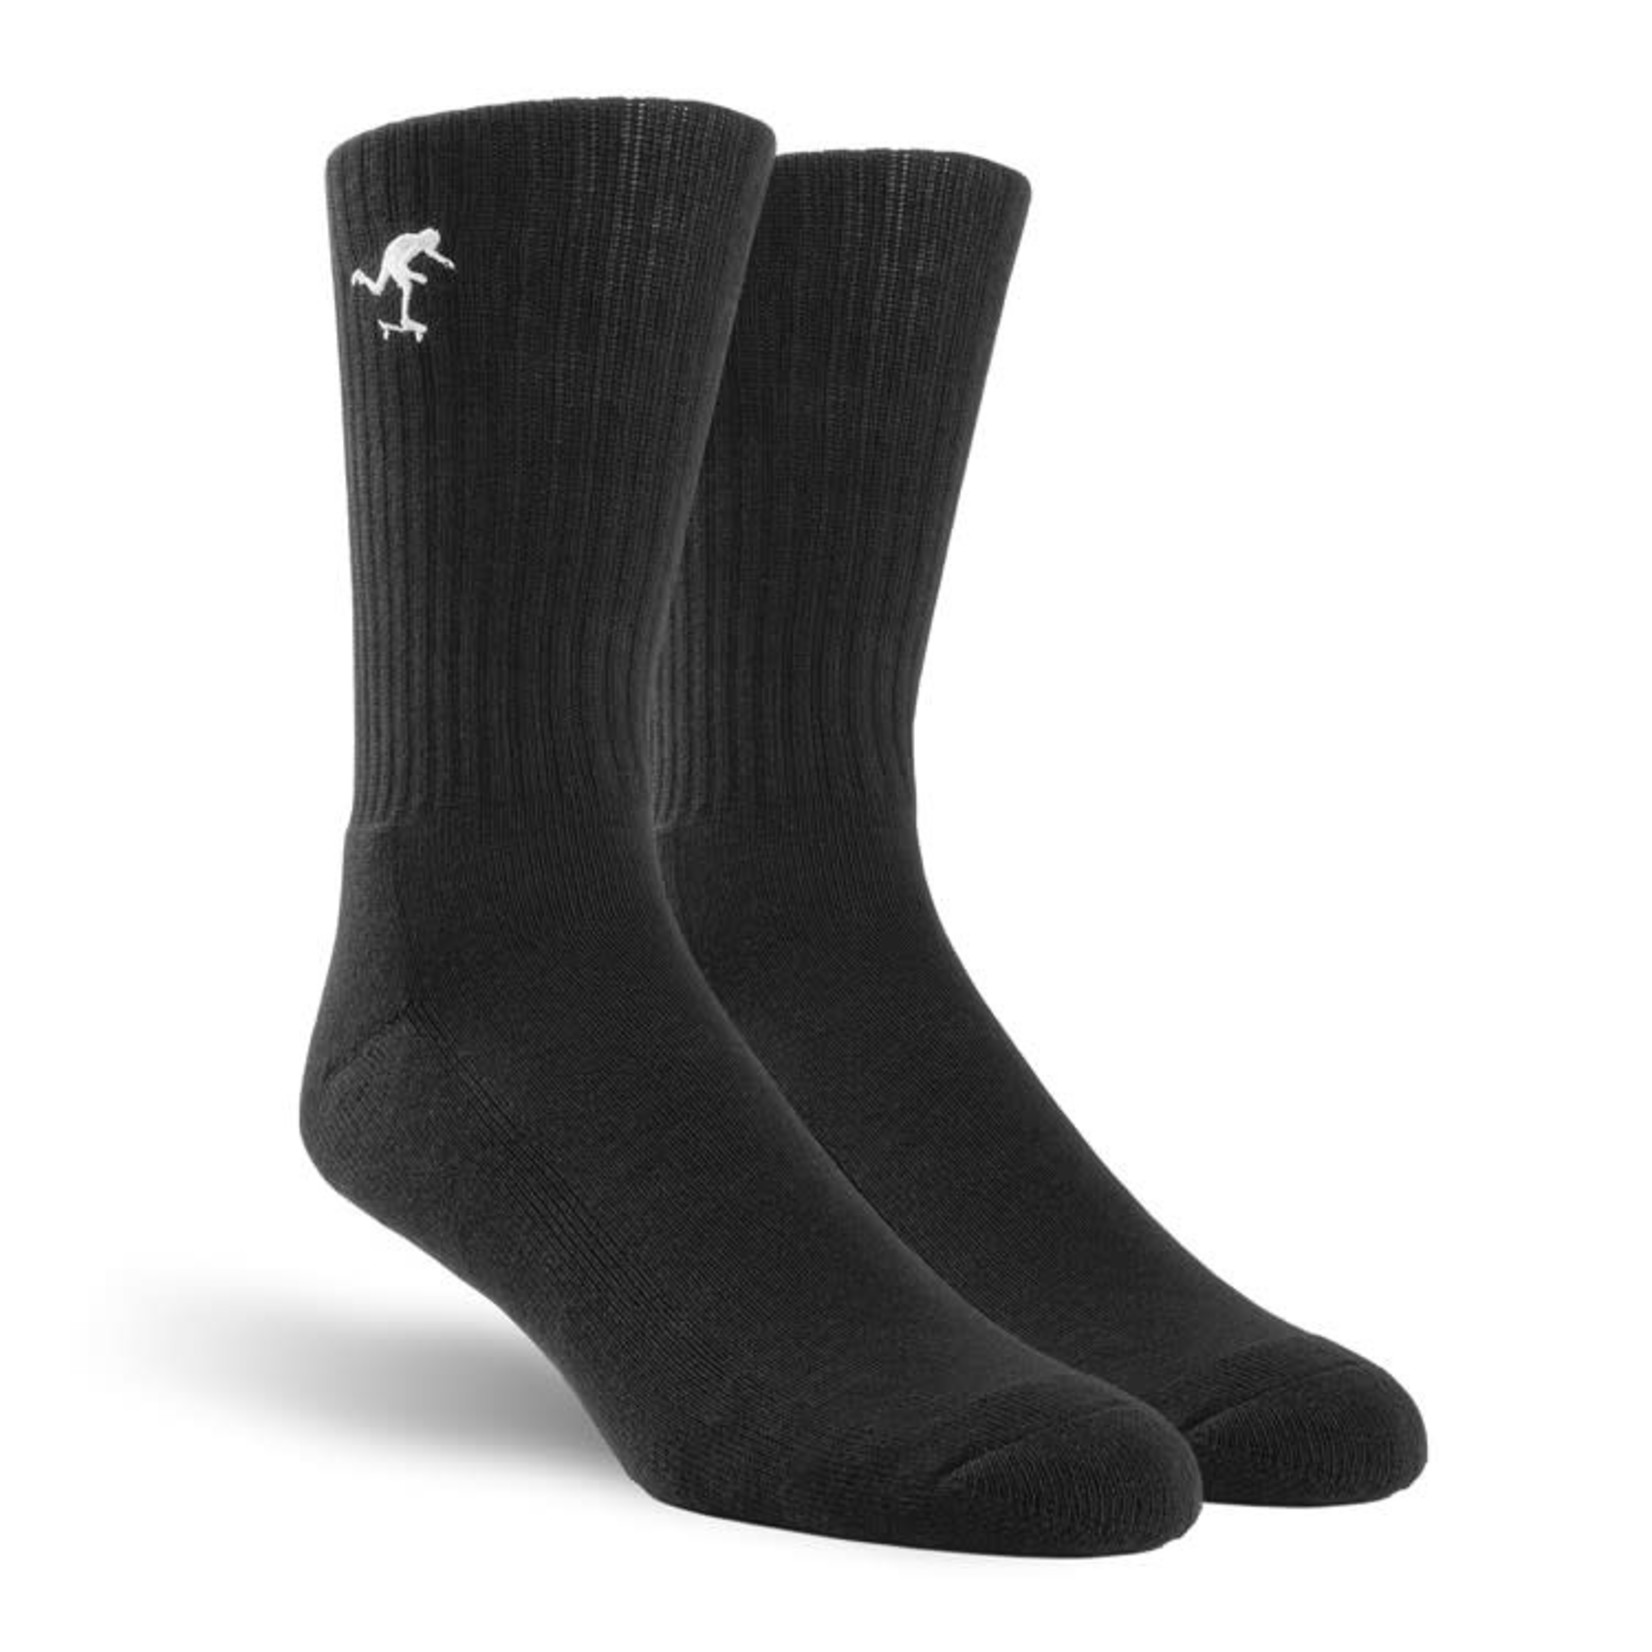 foundation Foundation Push Crew Socks - One Size - Black